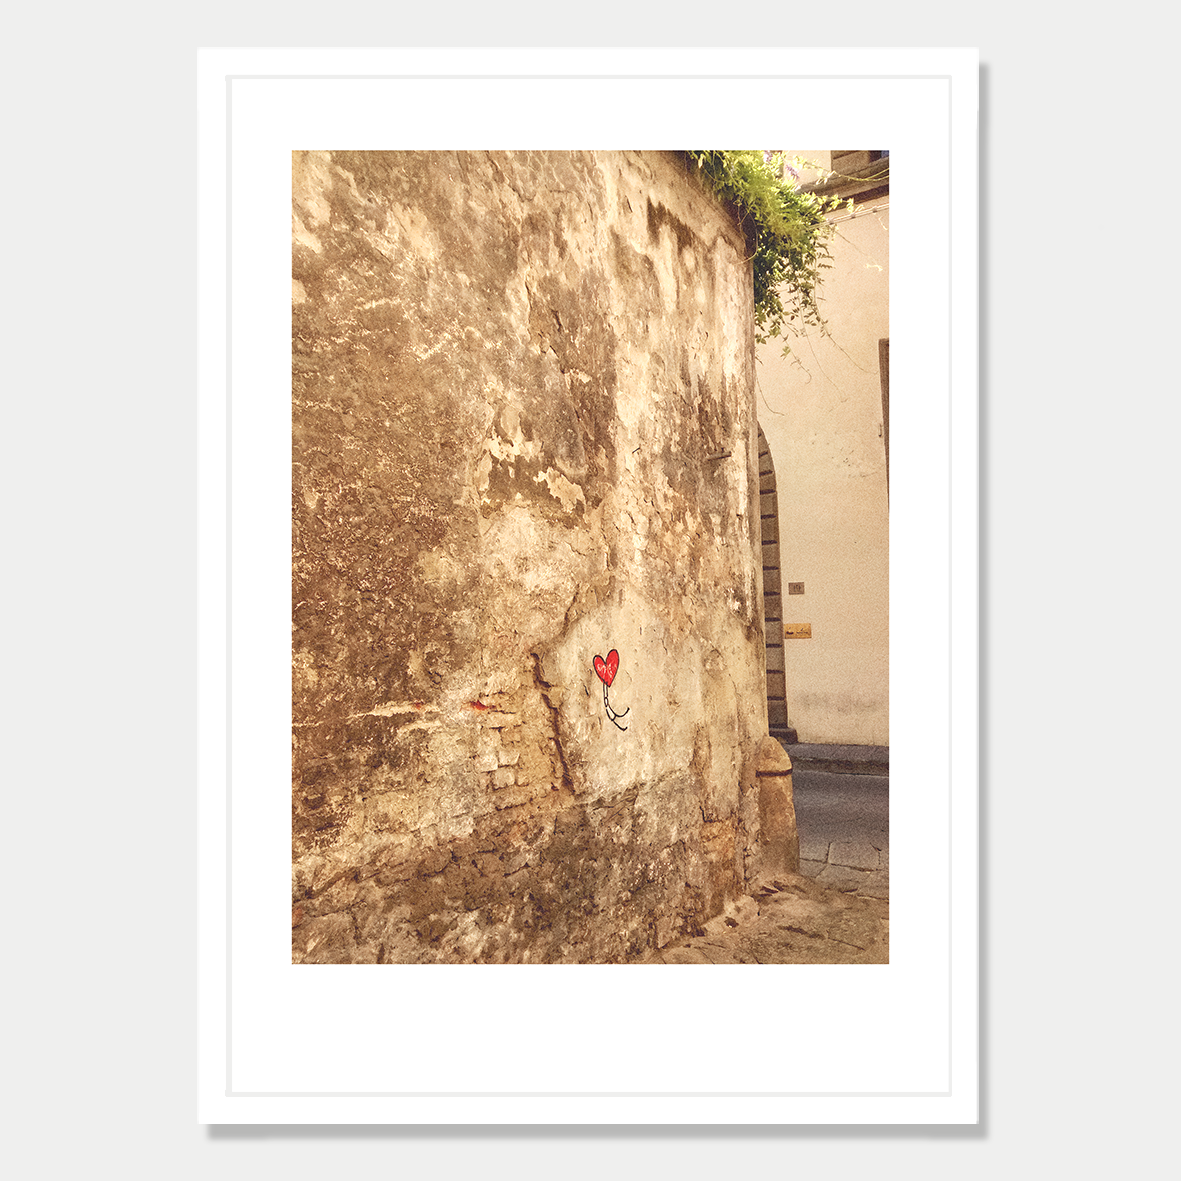 Firenze Back Street Heart Graffiti Still Life Photographic Art Print in a Skinny White Frame